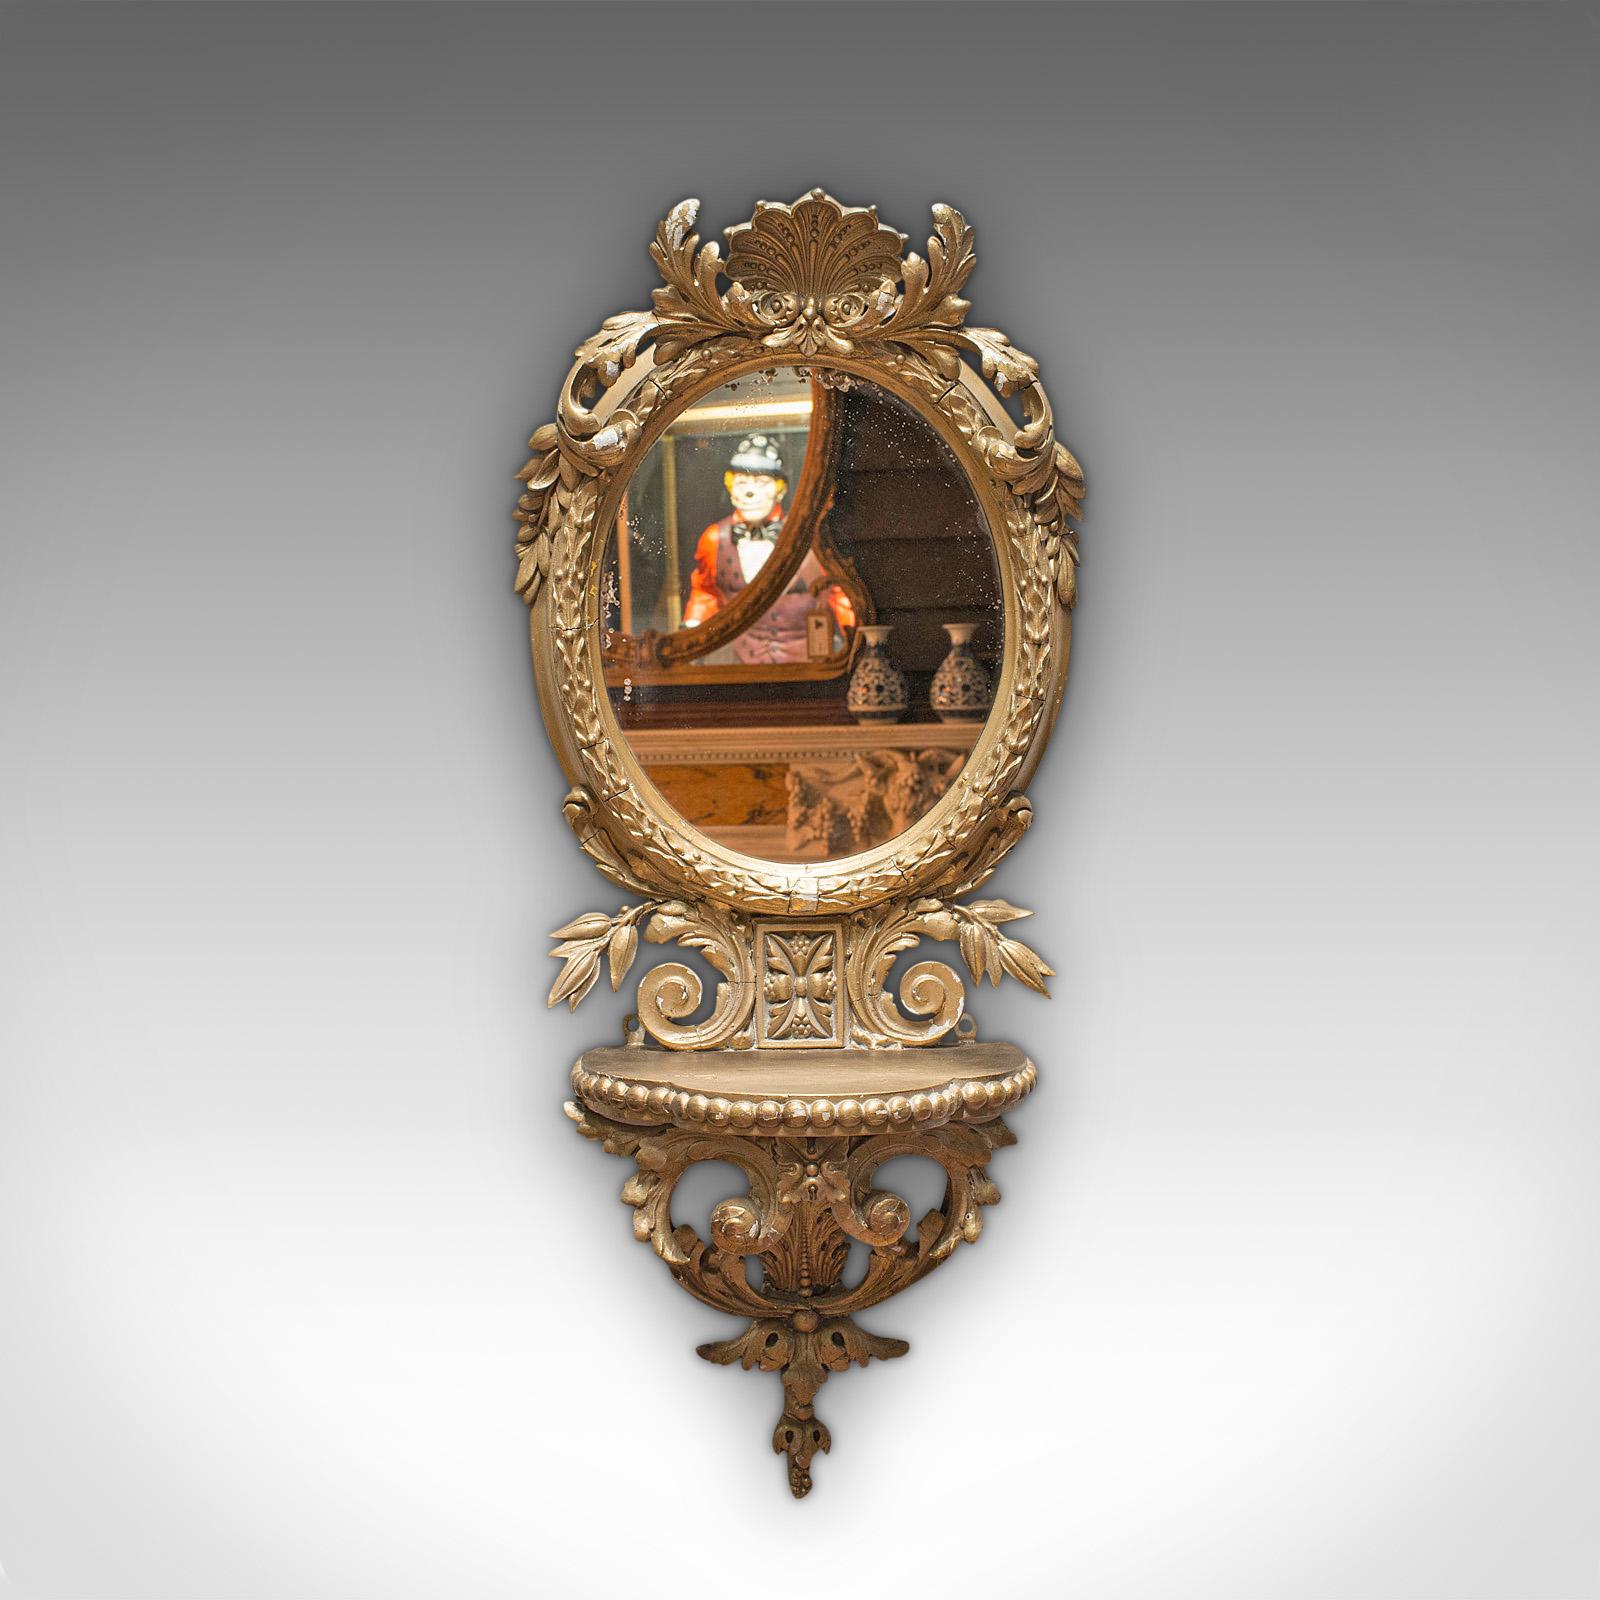 Dies ist ein antiker Wandspiegel. Ein französischer, vergoldeter, ovaler Spiegel mit verziertem Rahmen aus der frühen viktorianischen Periode, um 1850.

Hervorragende Details und ansprechende Farbtöne
Mit wünschenswerter Alterspatina
Vergoldetes